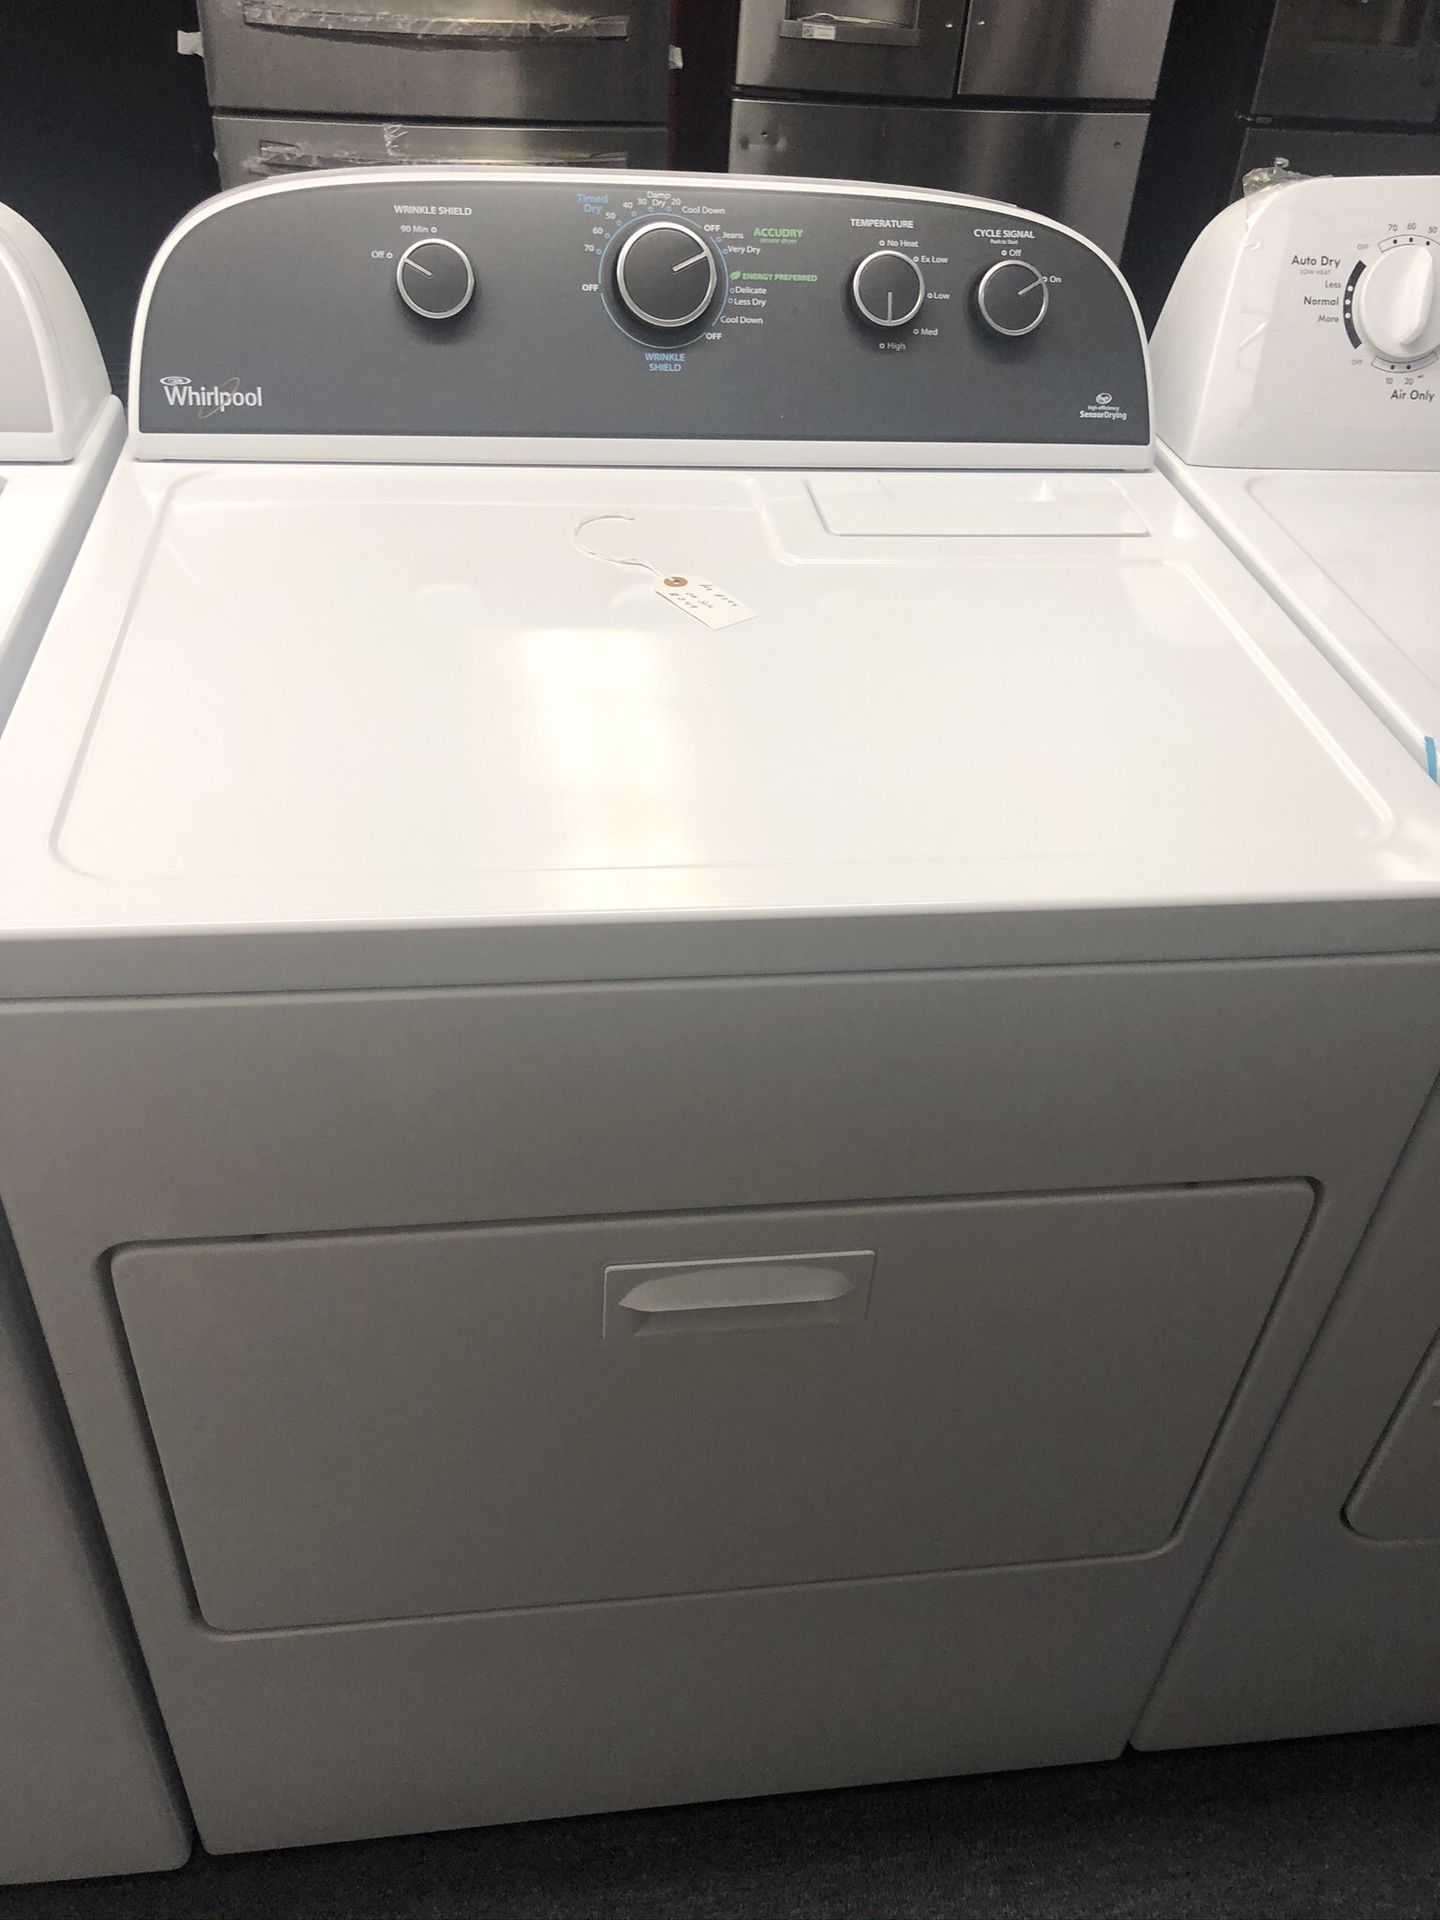 Used whirlpool dryer. 1 year warranty